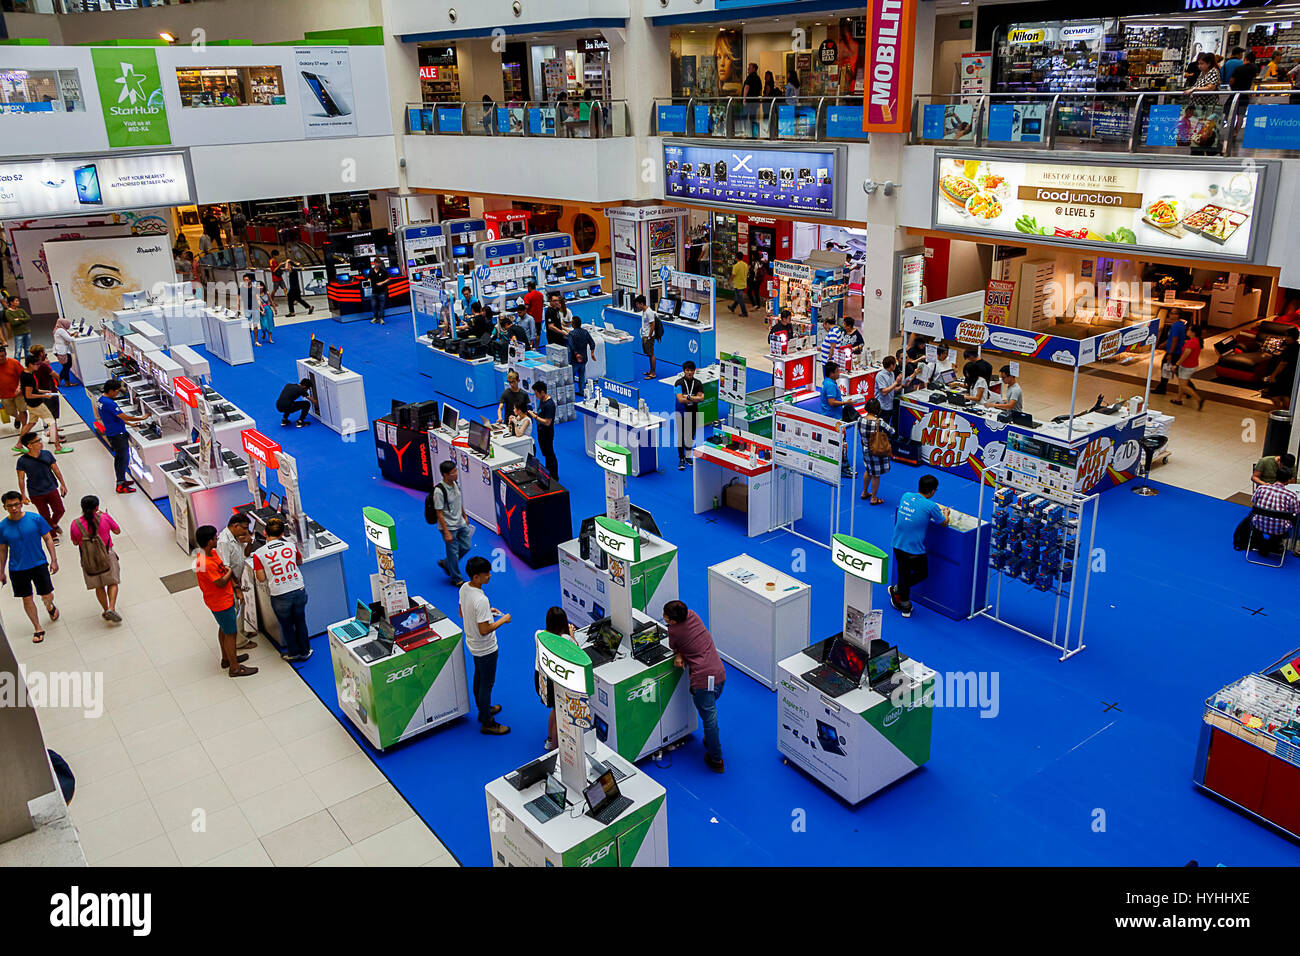 Sales stallsof più produttori di computer. Prese a Funan Vita Digitale Mall, Singapore Foto Stock